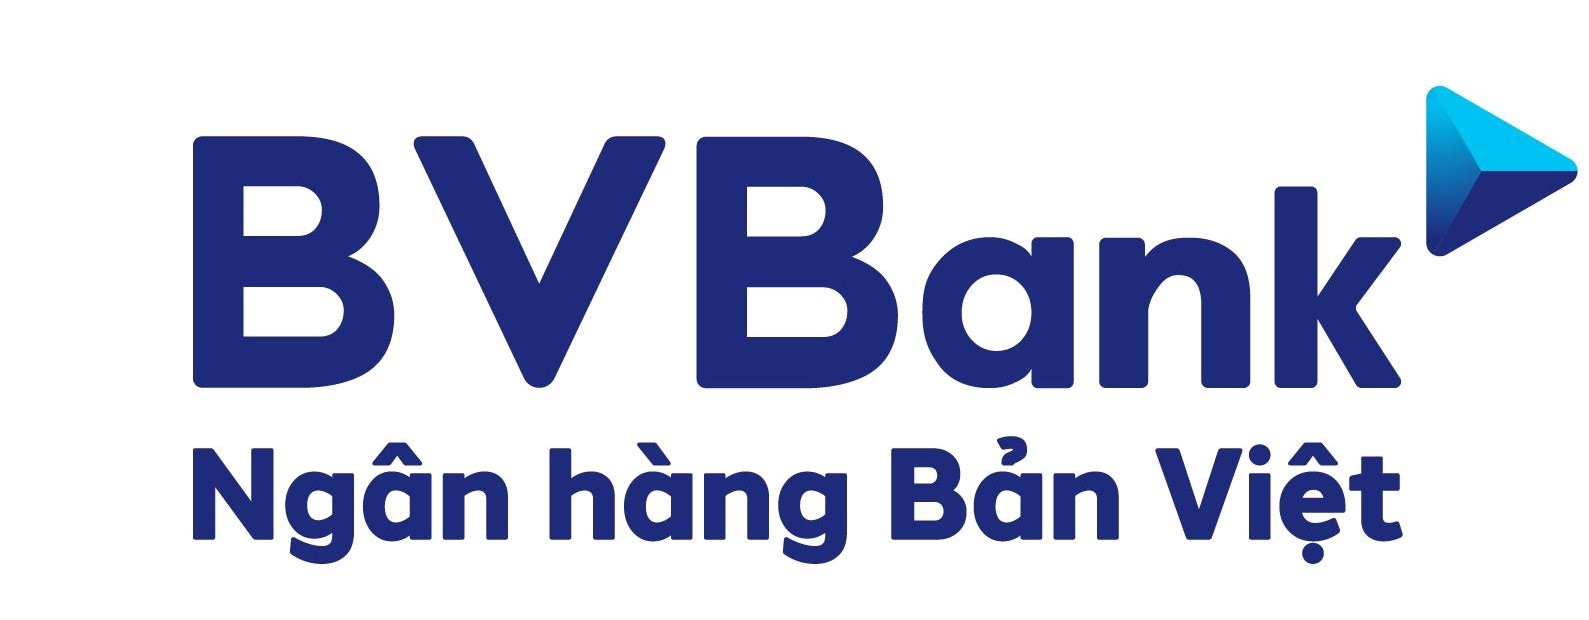 Ngân hàng Bản Việt